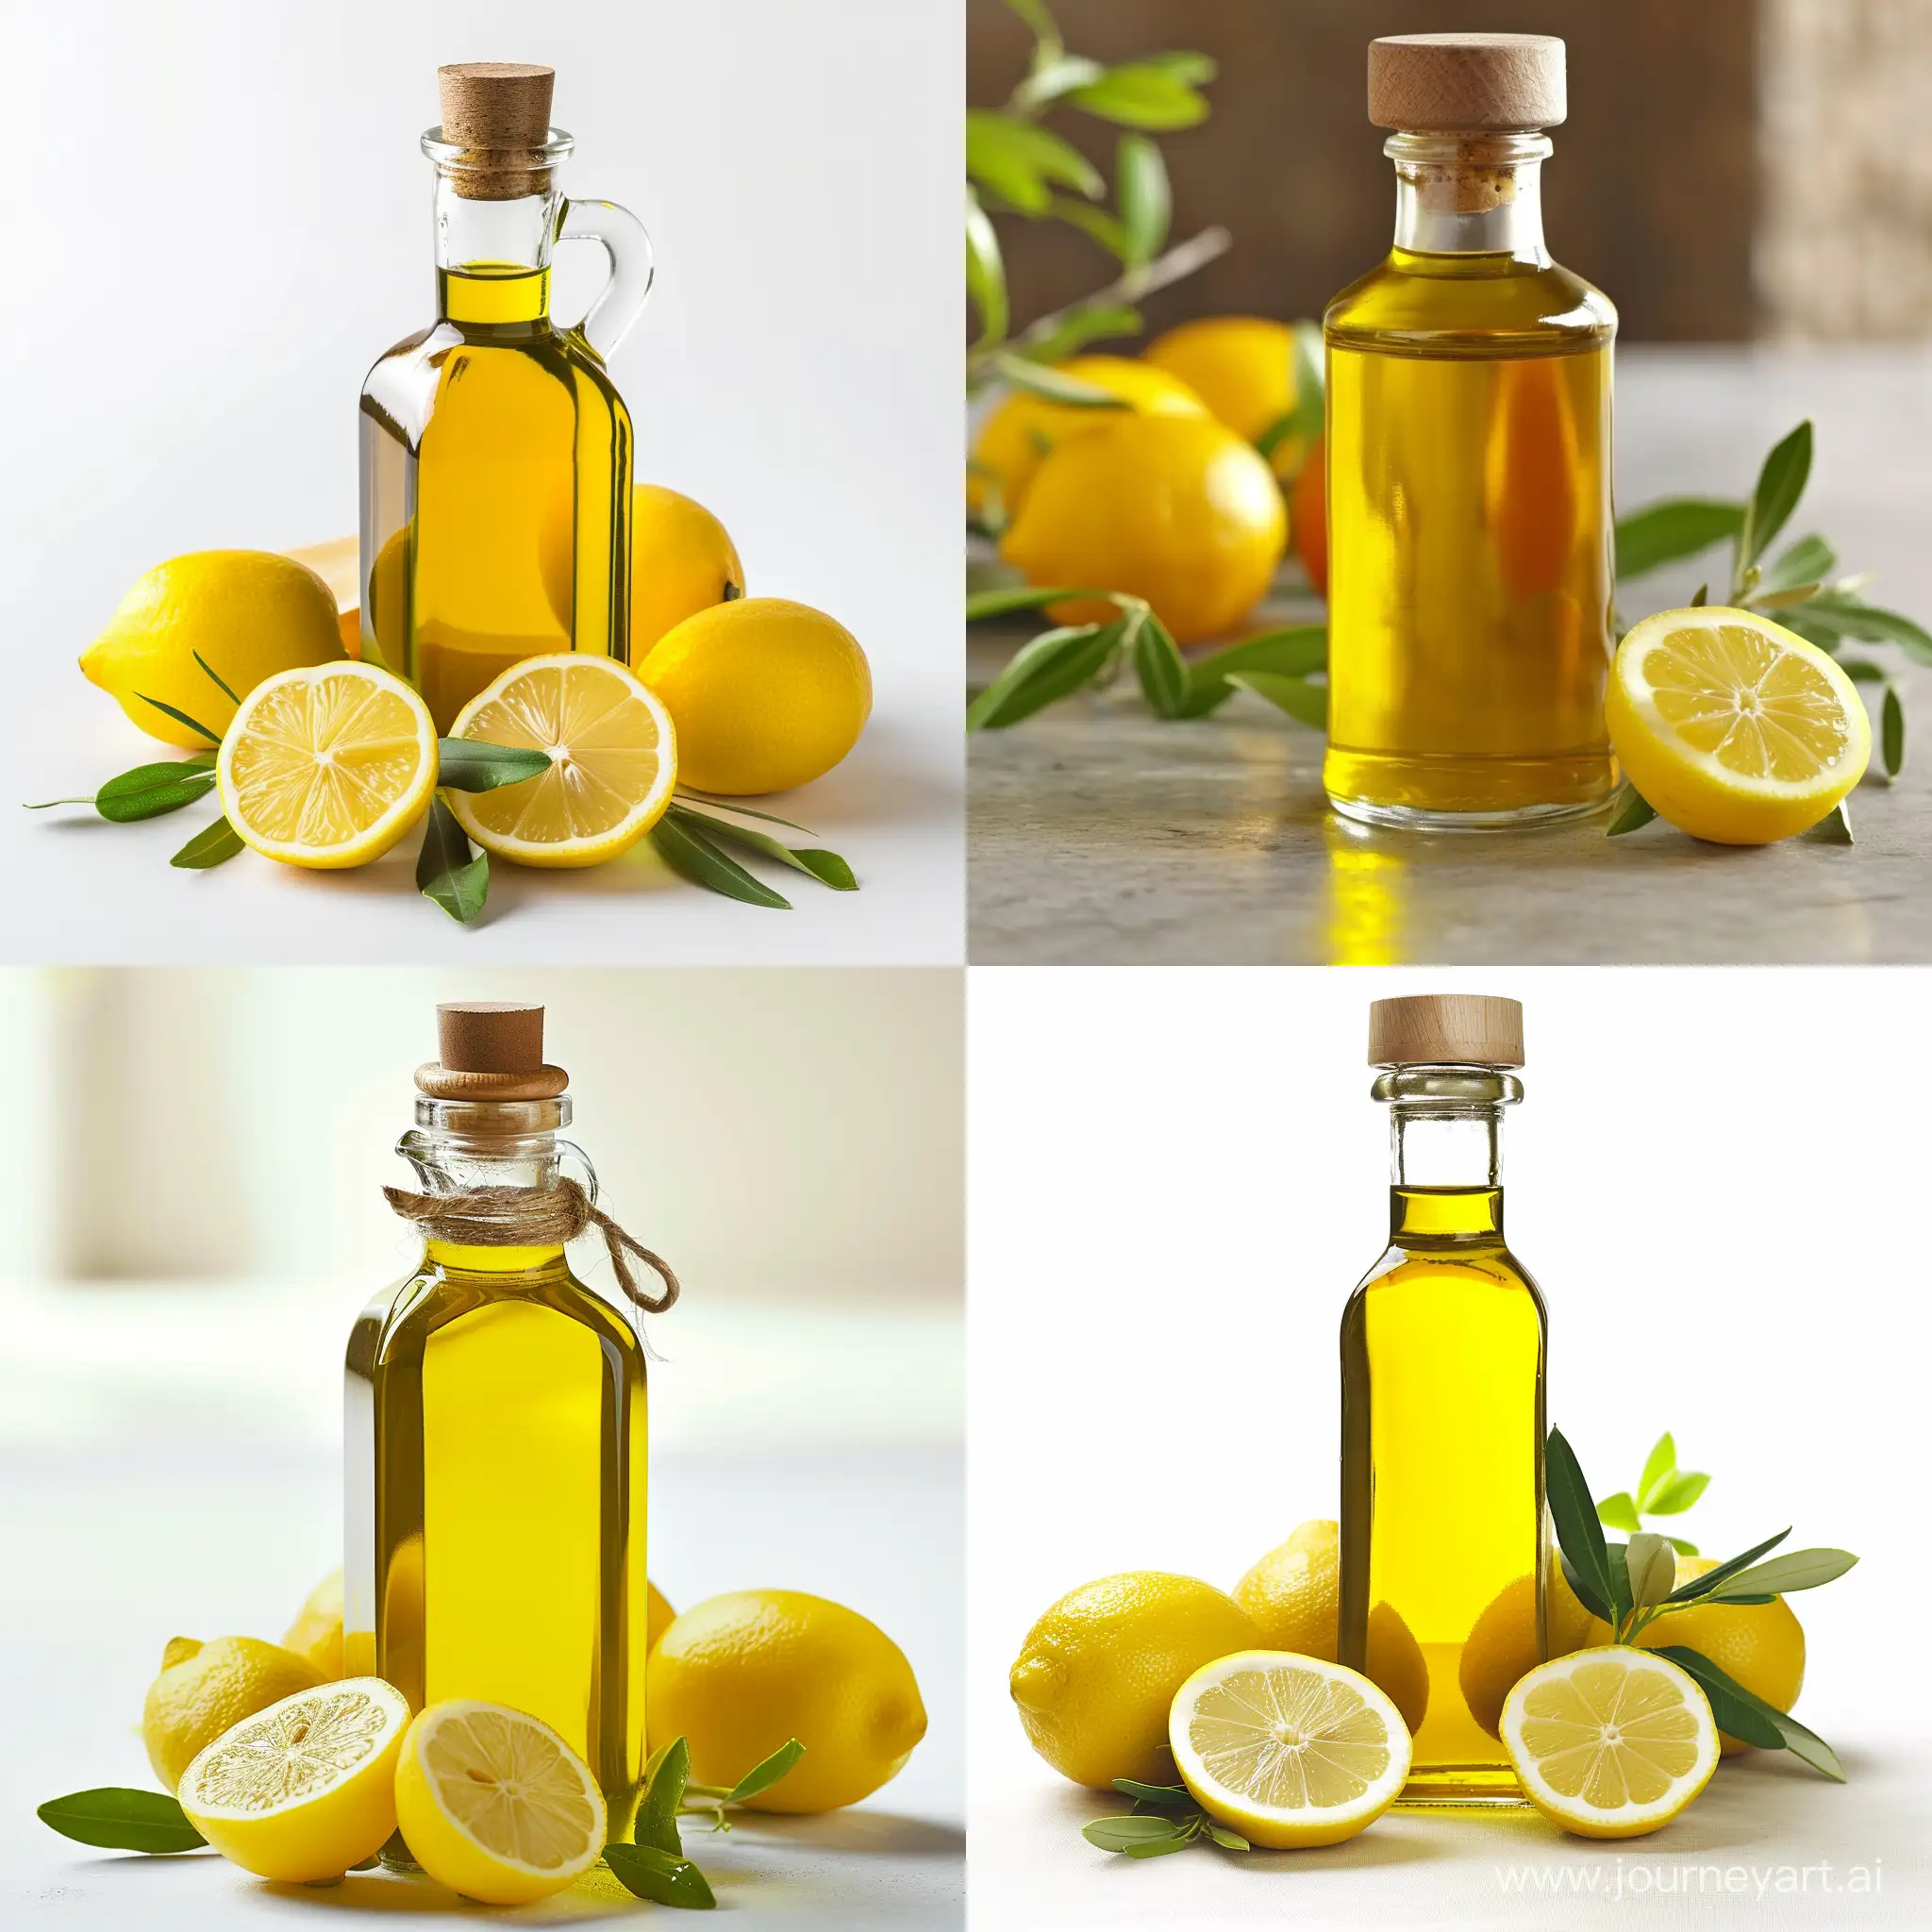 Бутылка оливкового масла и лимоны, реалистичное фото